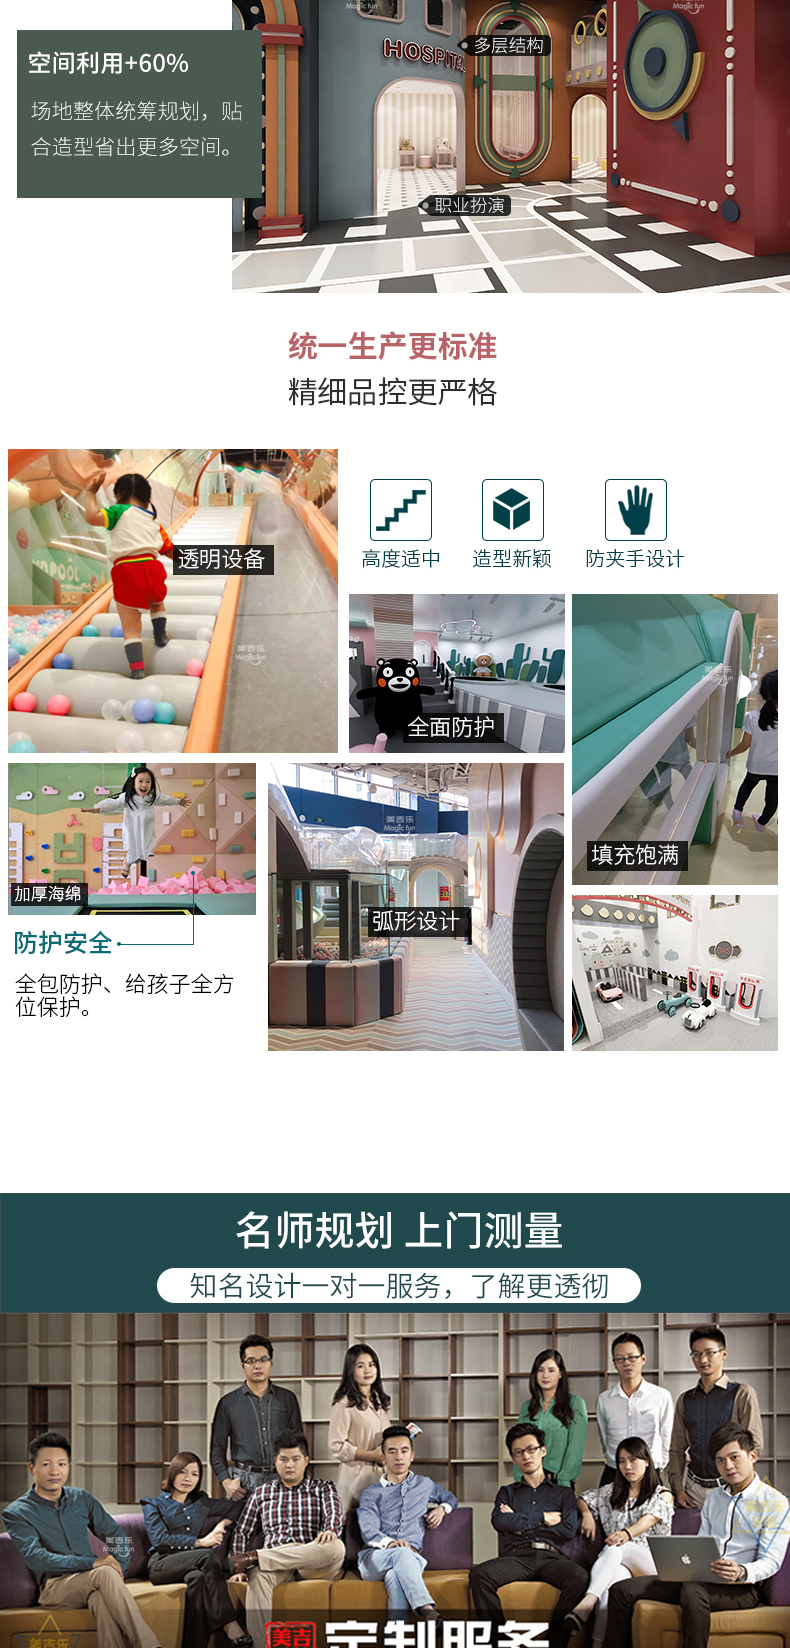 武汉游乐场室内设备 淘气堡儿童乐园 大型亲子餐厅 4